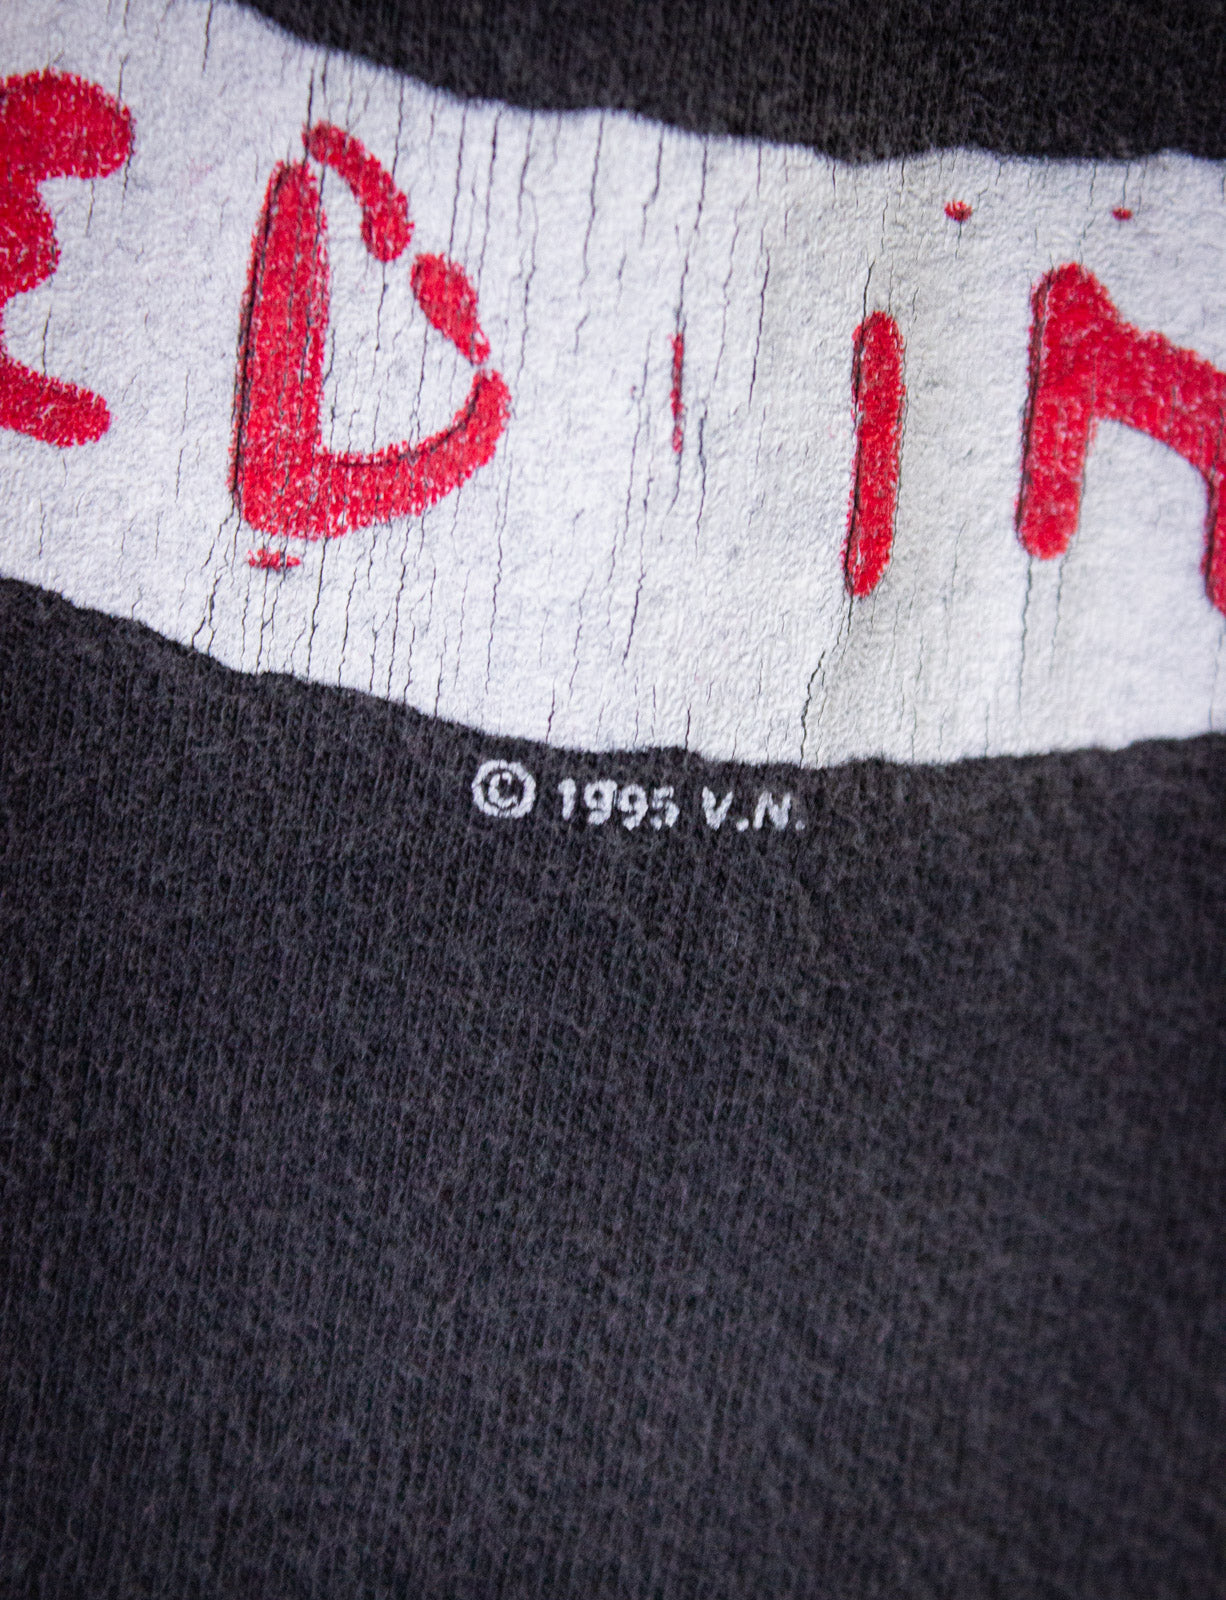 Vintage Vince Neil Carved In Stone Concert T Shirt 1996 Black XL